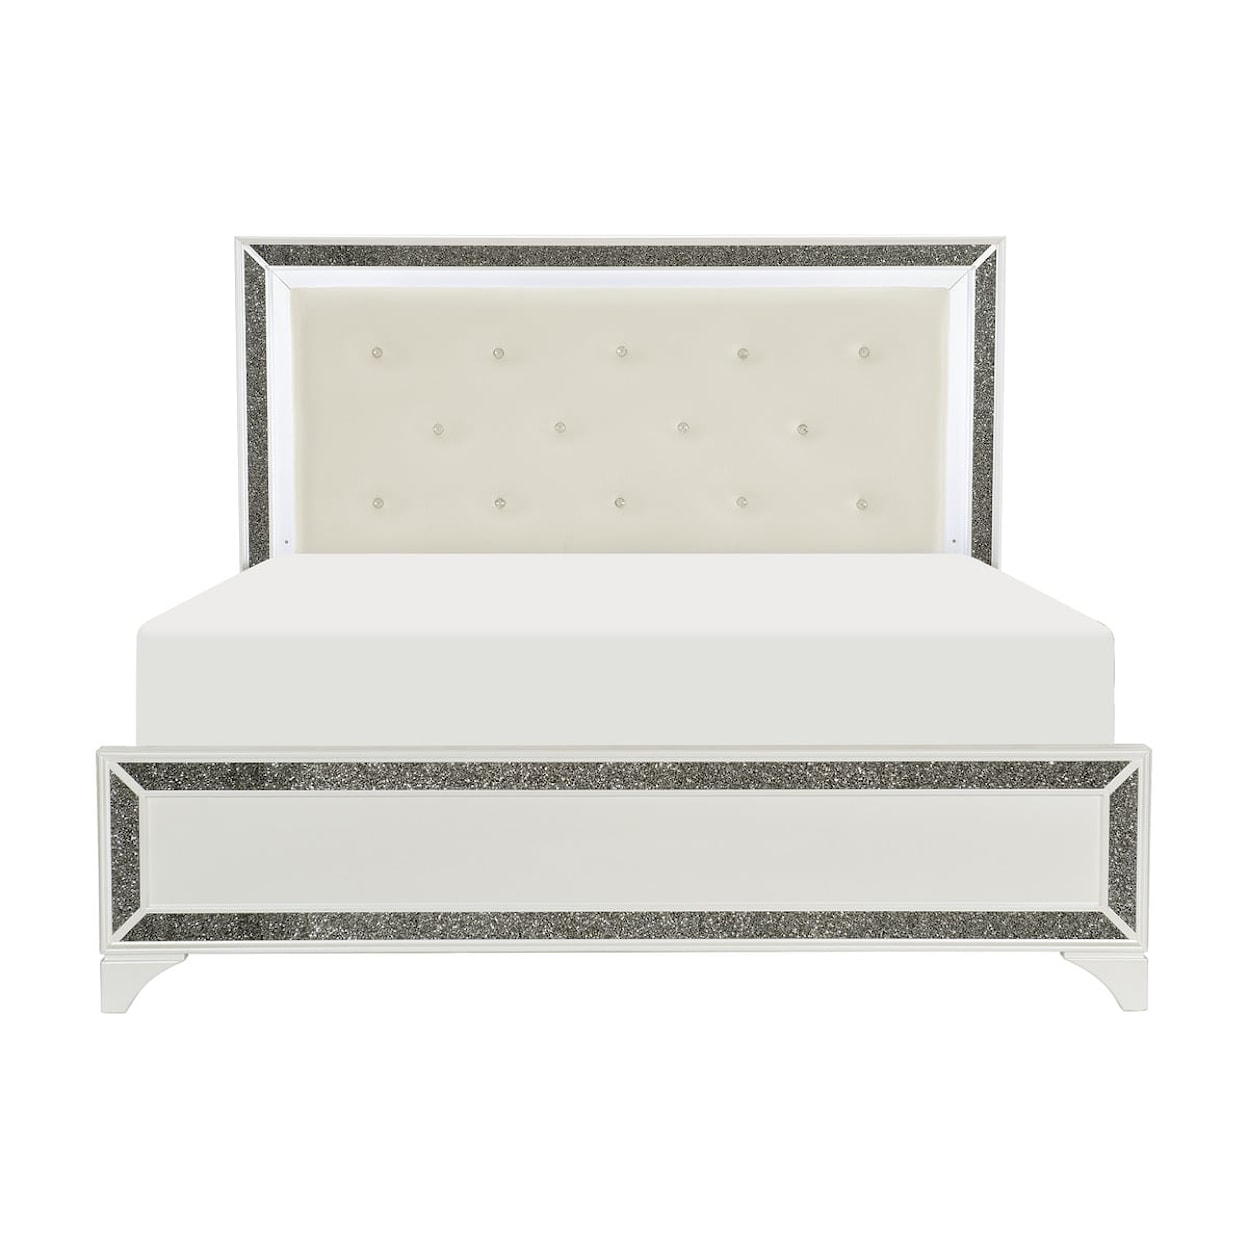 Homelegance Furniture Salon King Bed